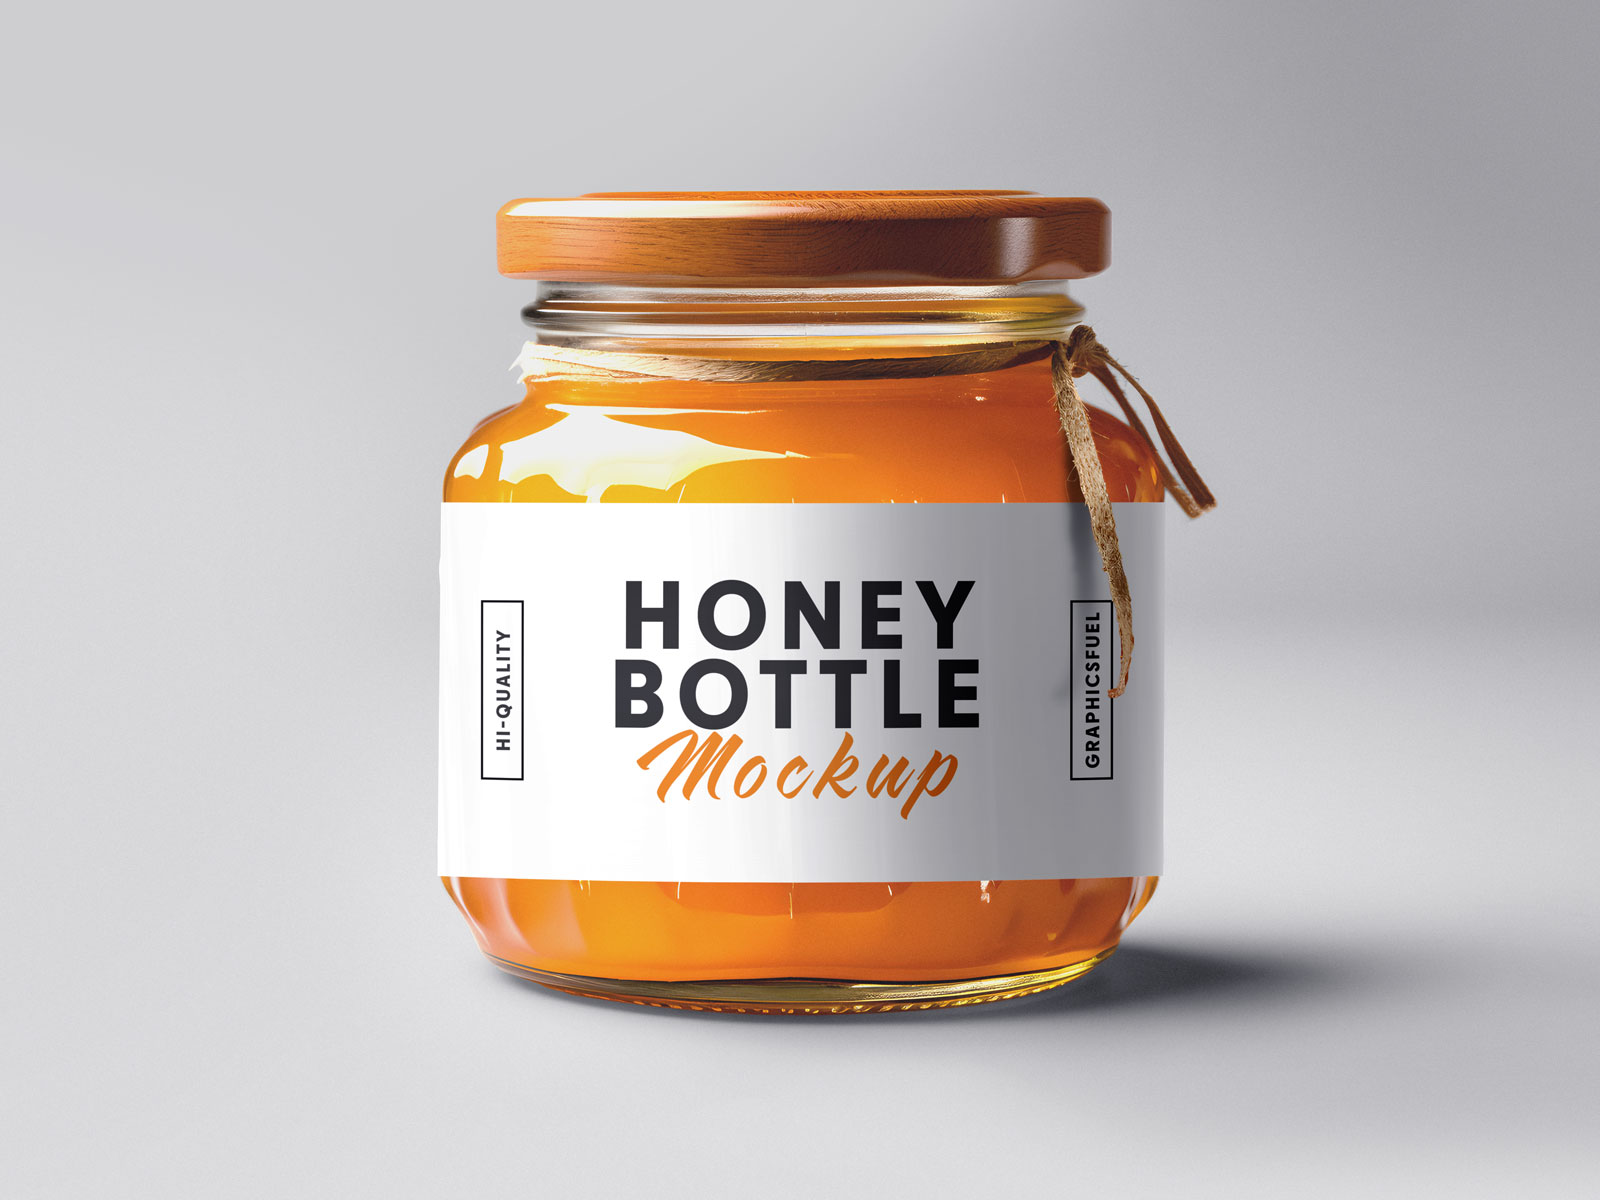 Honey bottle mockup